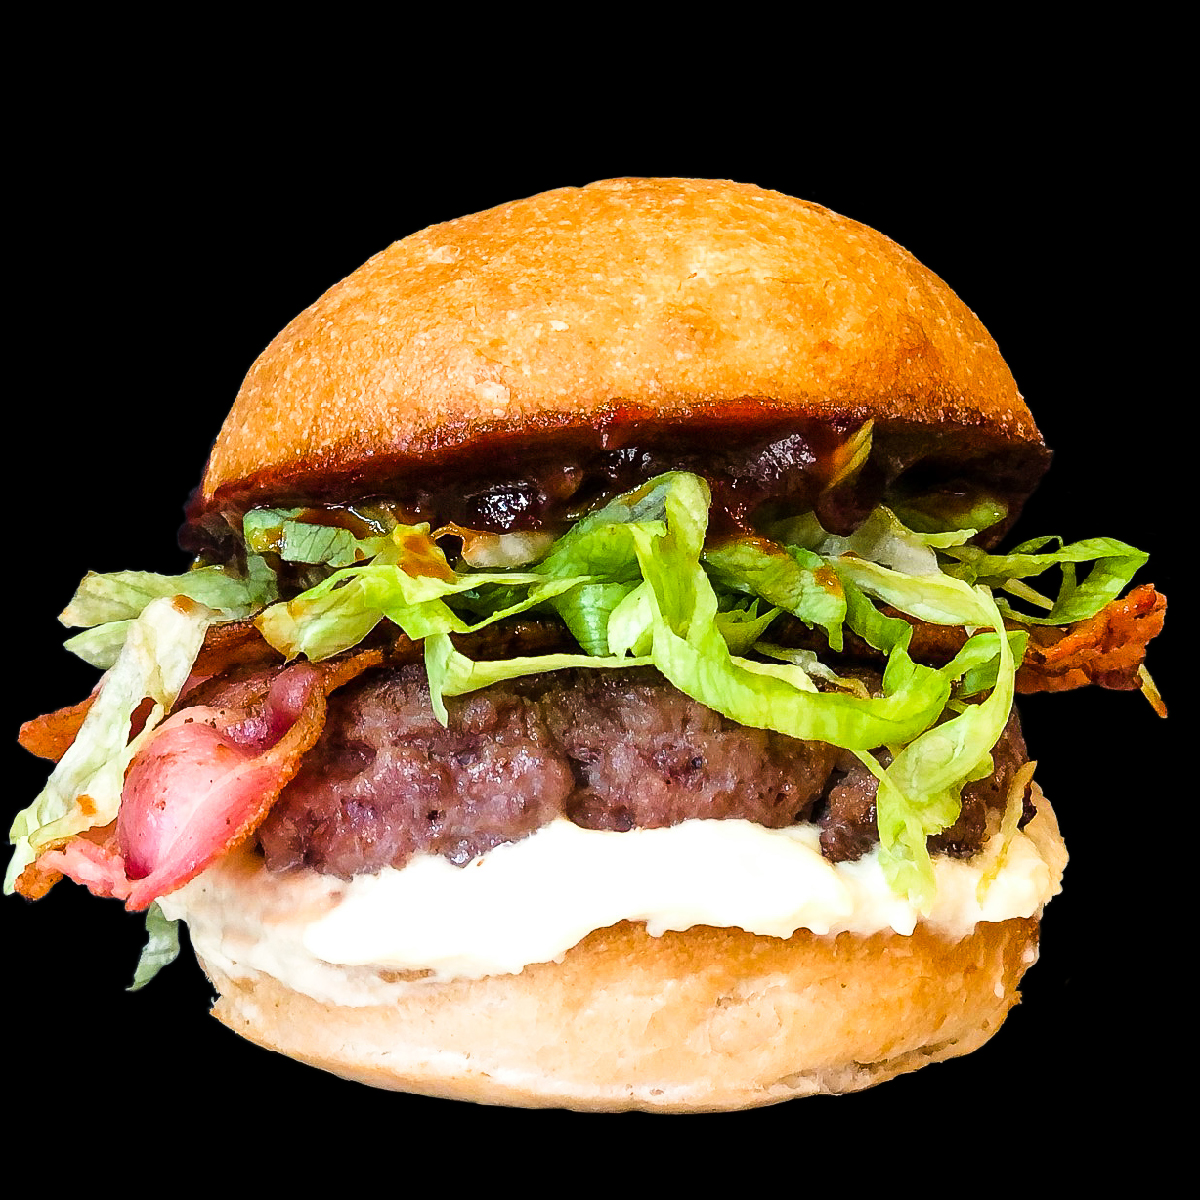 Trilussa, è il nome di uno degli hamburger artigianali e senza glutine di Erudito